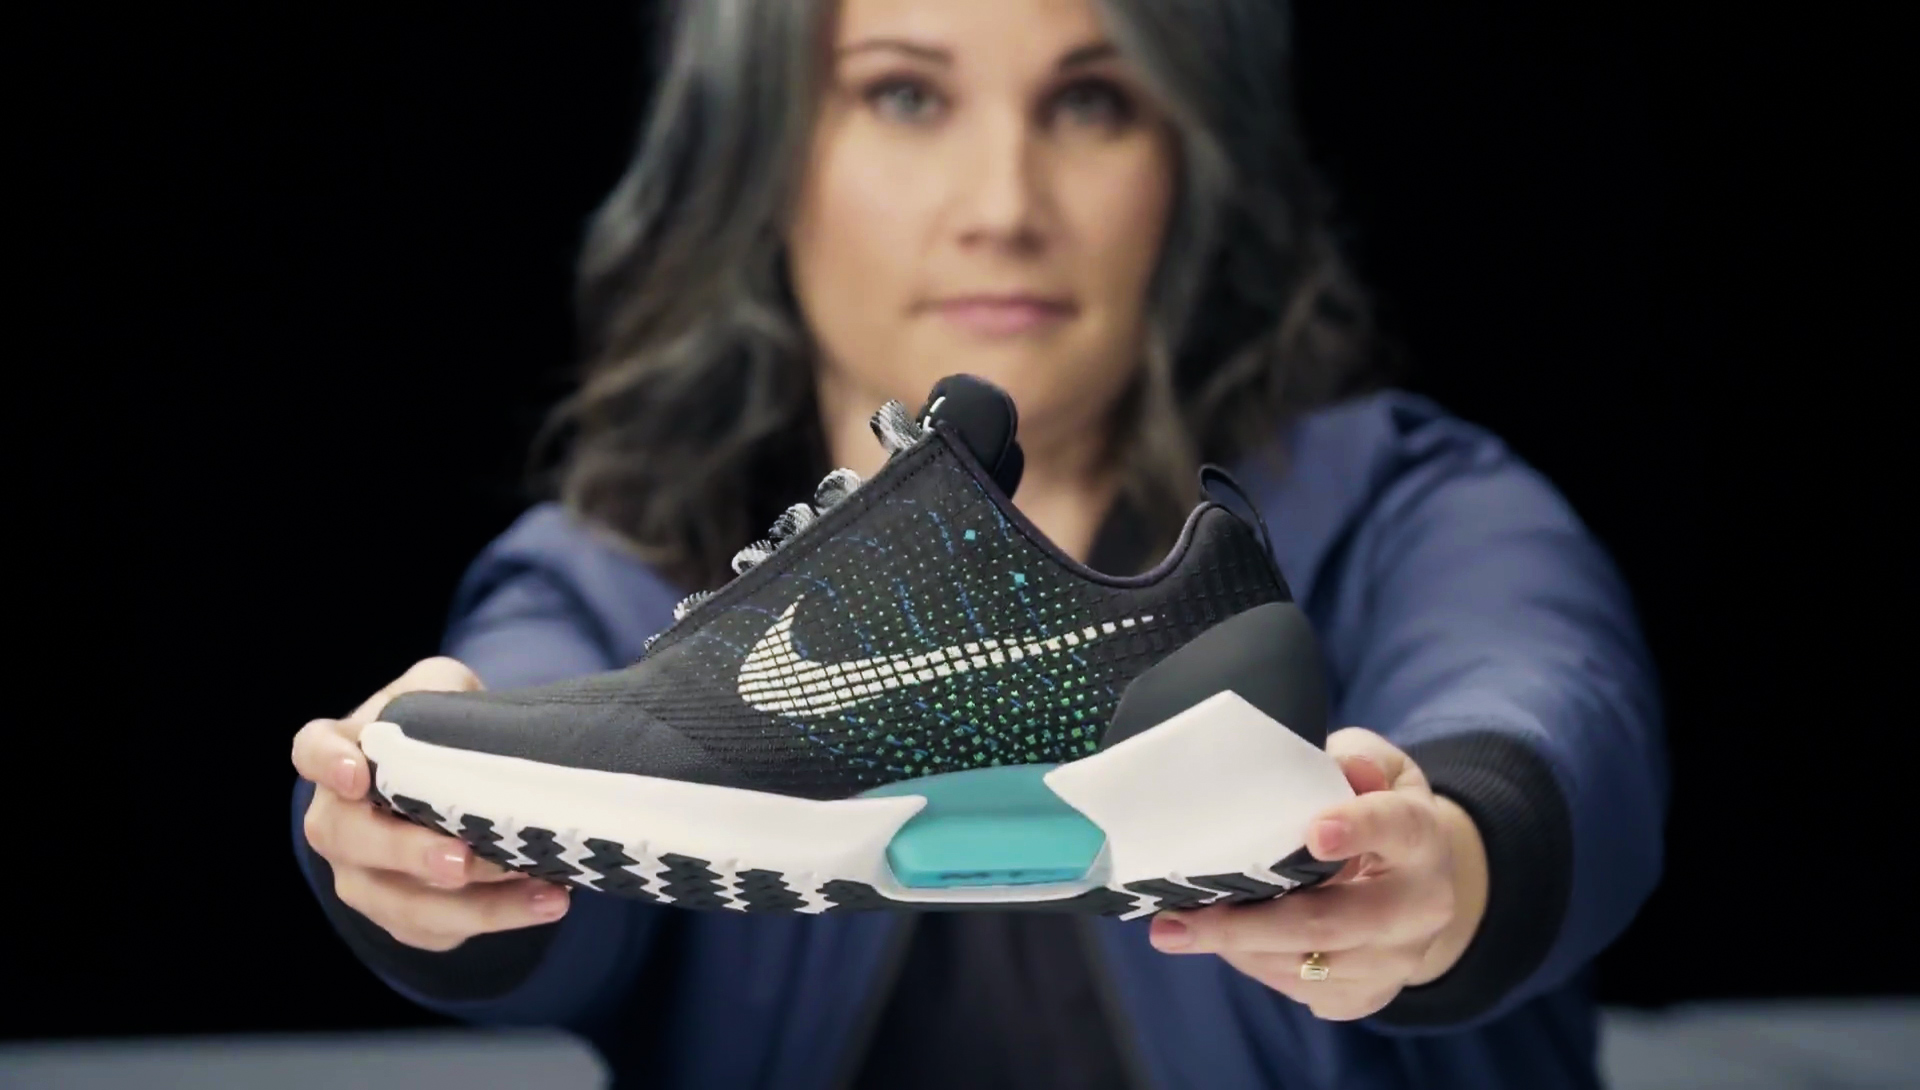 We on Nike's HyperAdapt 1.0 self-lacing sneakers | Digital Trends